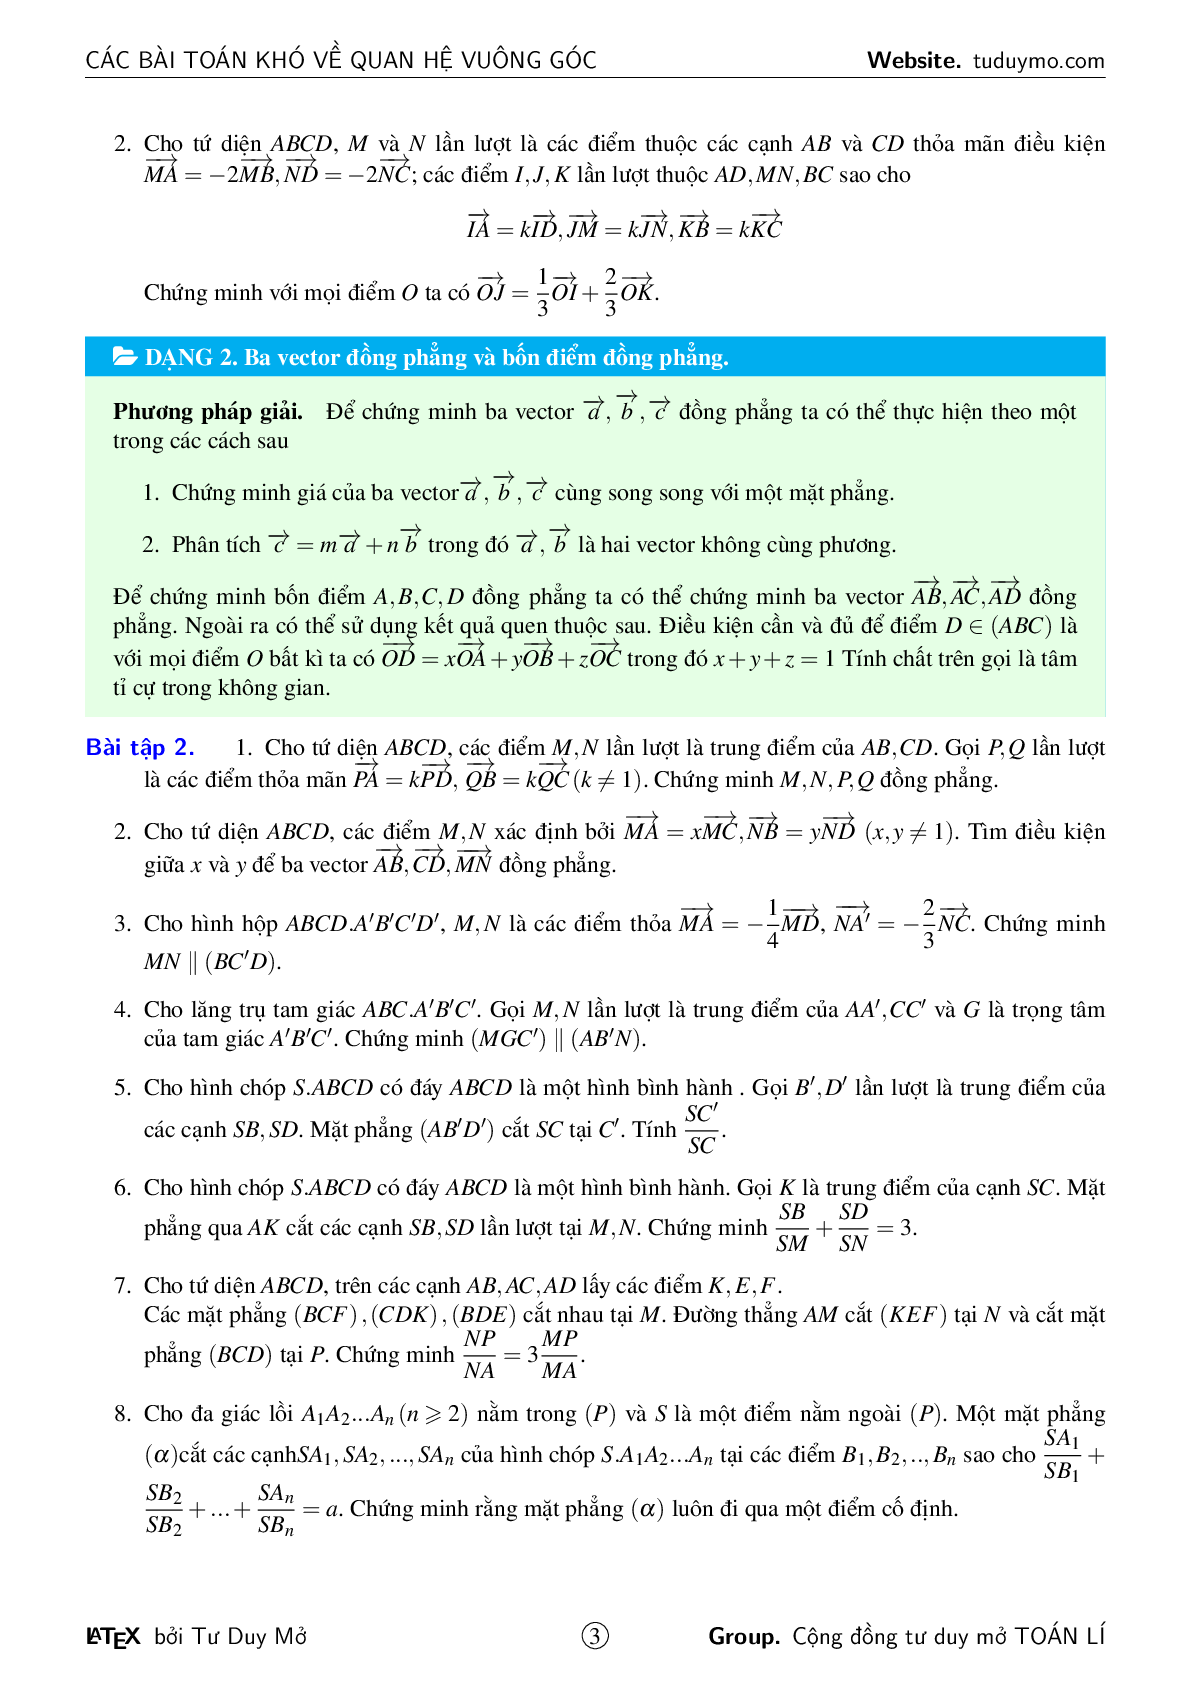 Các bài toán khó về quan hệ vuông góc (trang 3)